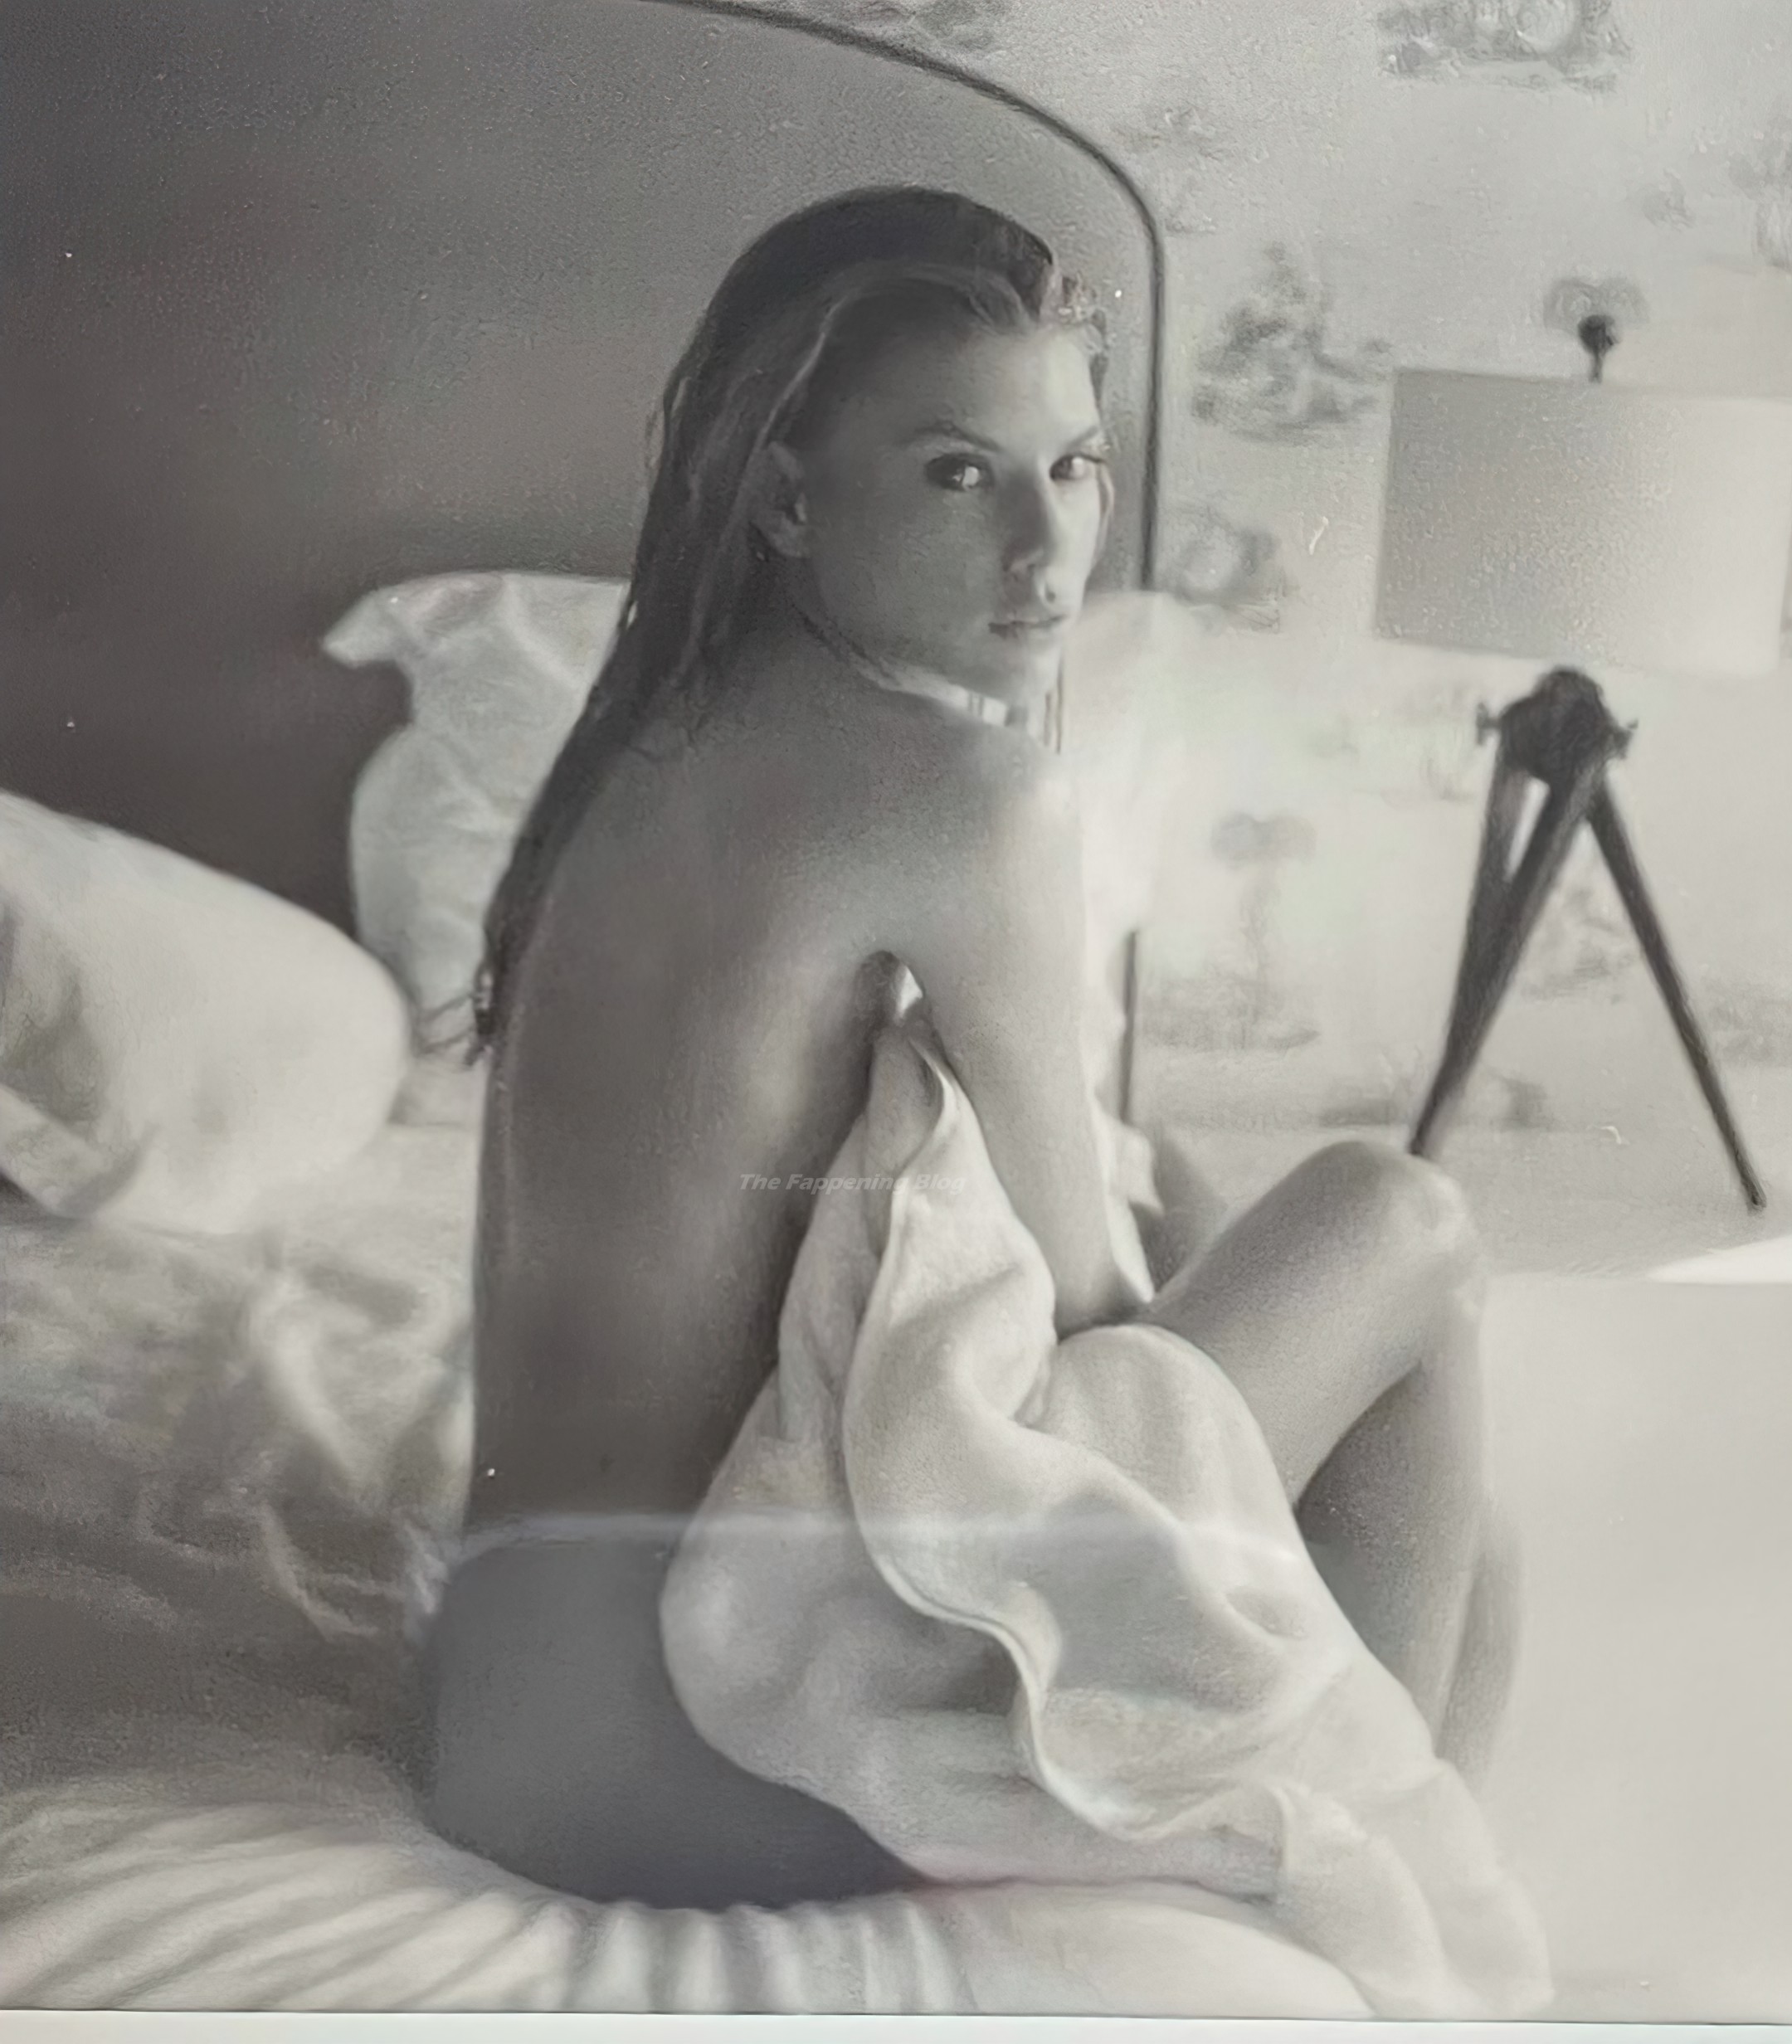 Charlotte Mckinney Nude Photo Leak